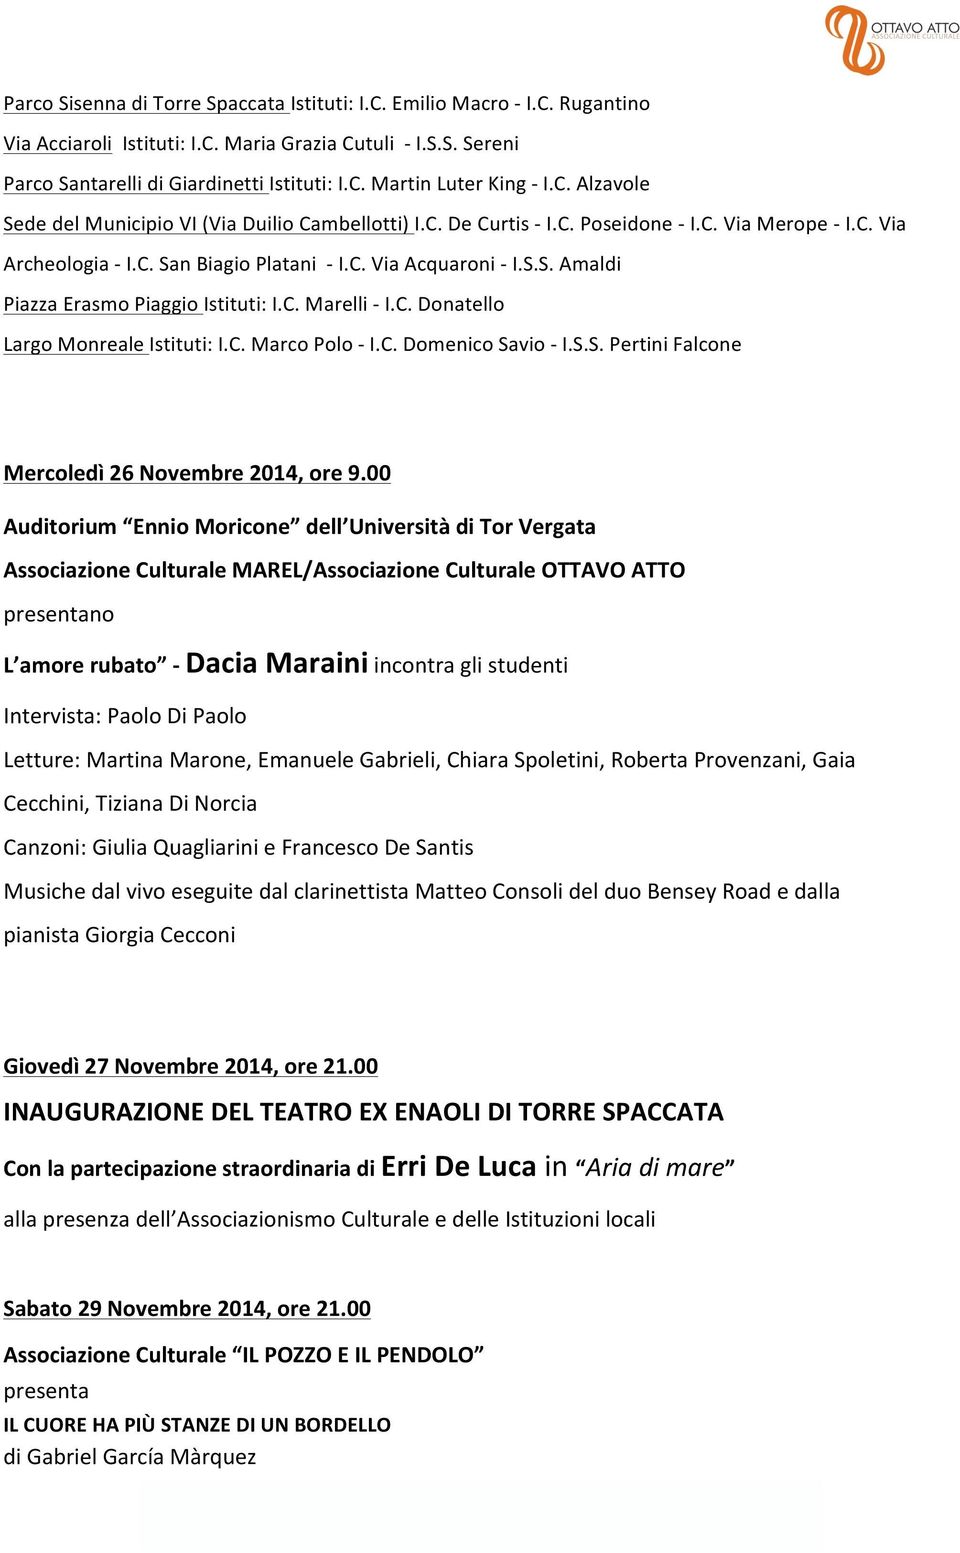 C. Marelli - I.C. Donatello Largo Monreale Istituti: I.C. Marco Polo - I.C. Domenico Savio - I.S.S. Pertini Falcone Mercoledì 26 Novembre 2014, ore 9.